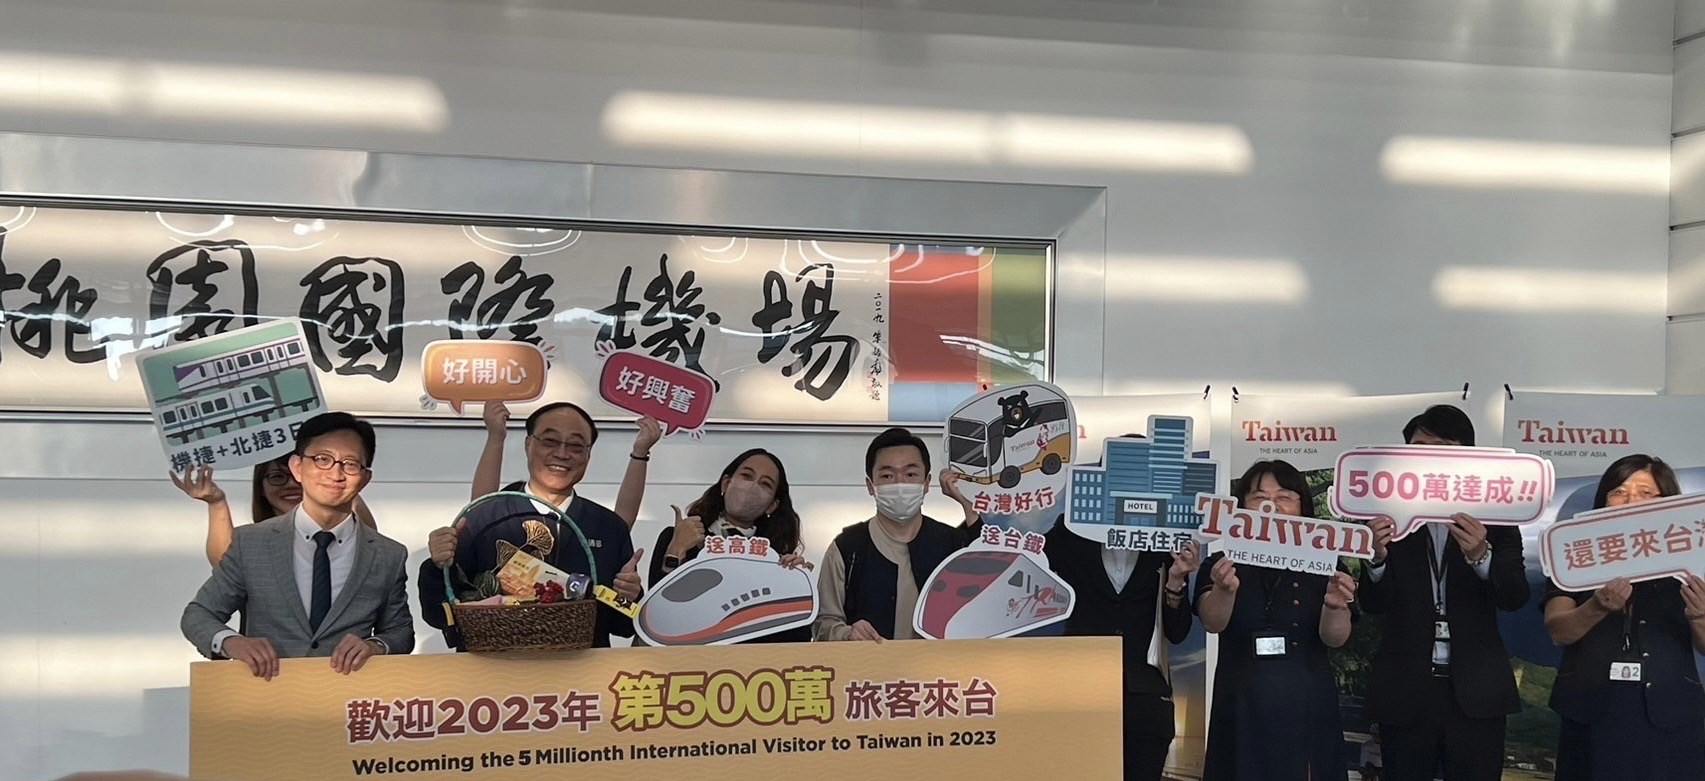 交通部觀光署喜迎第500萬人次國際旅客 「遊台灣金福氣」驚喜宣布消費金抽獎再加碼3億元